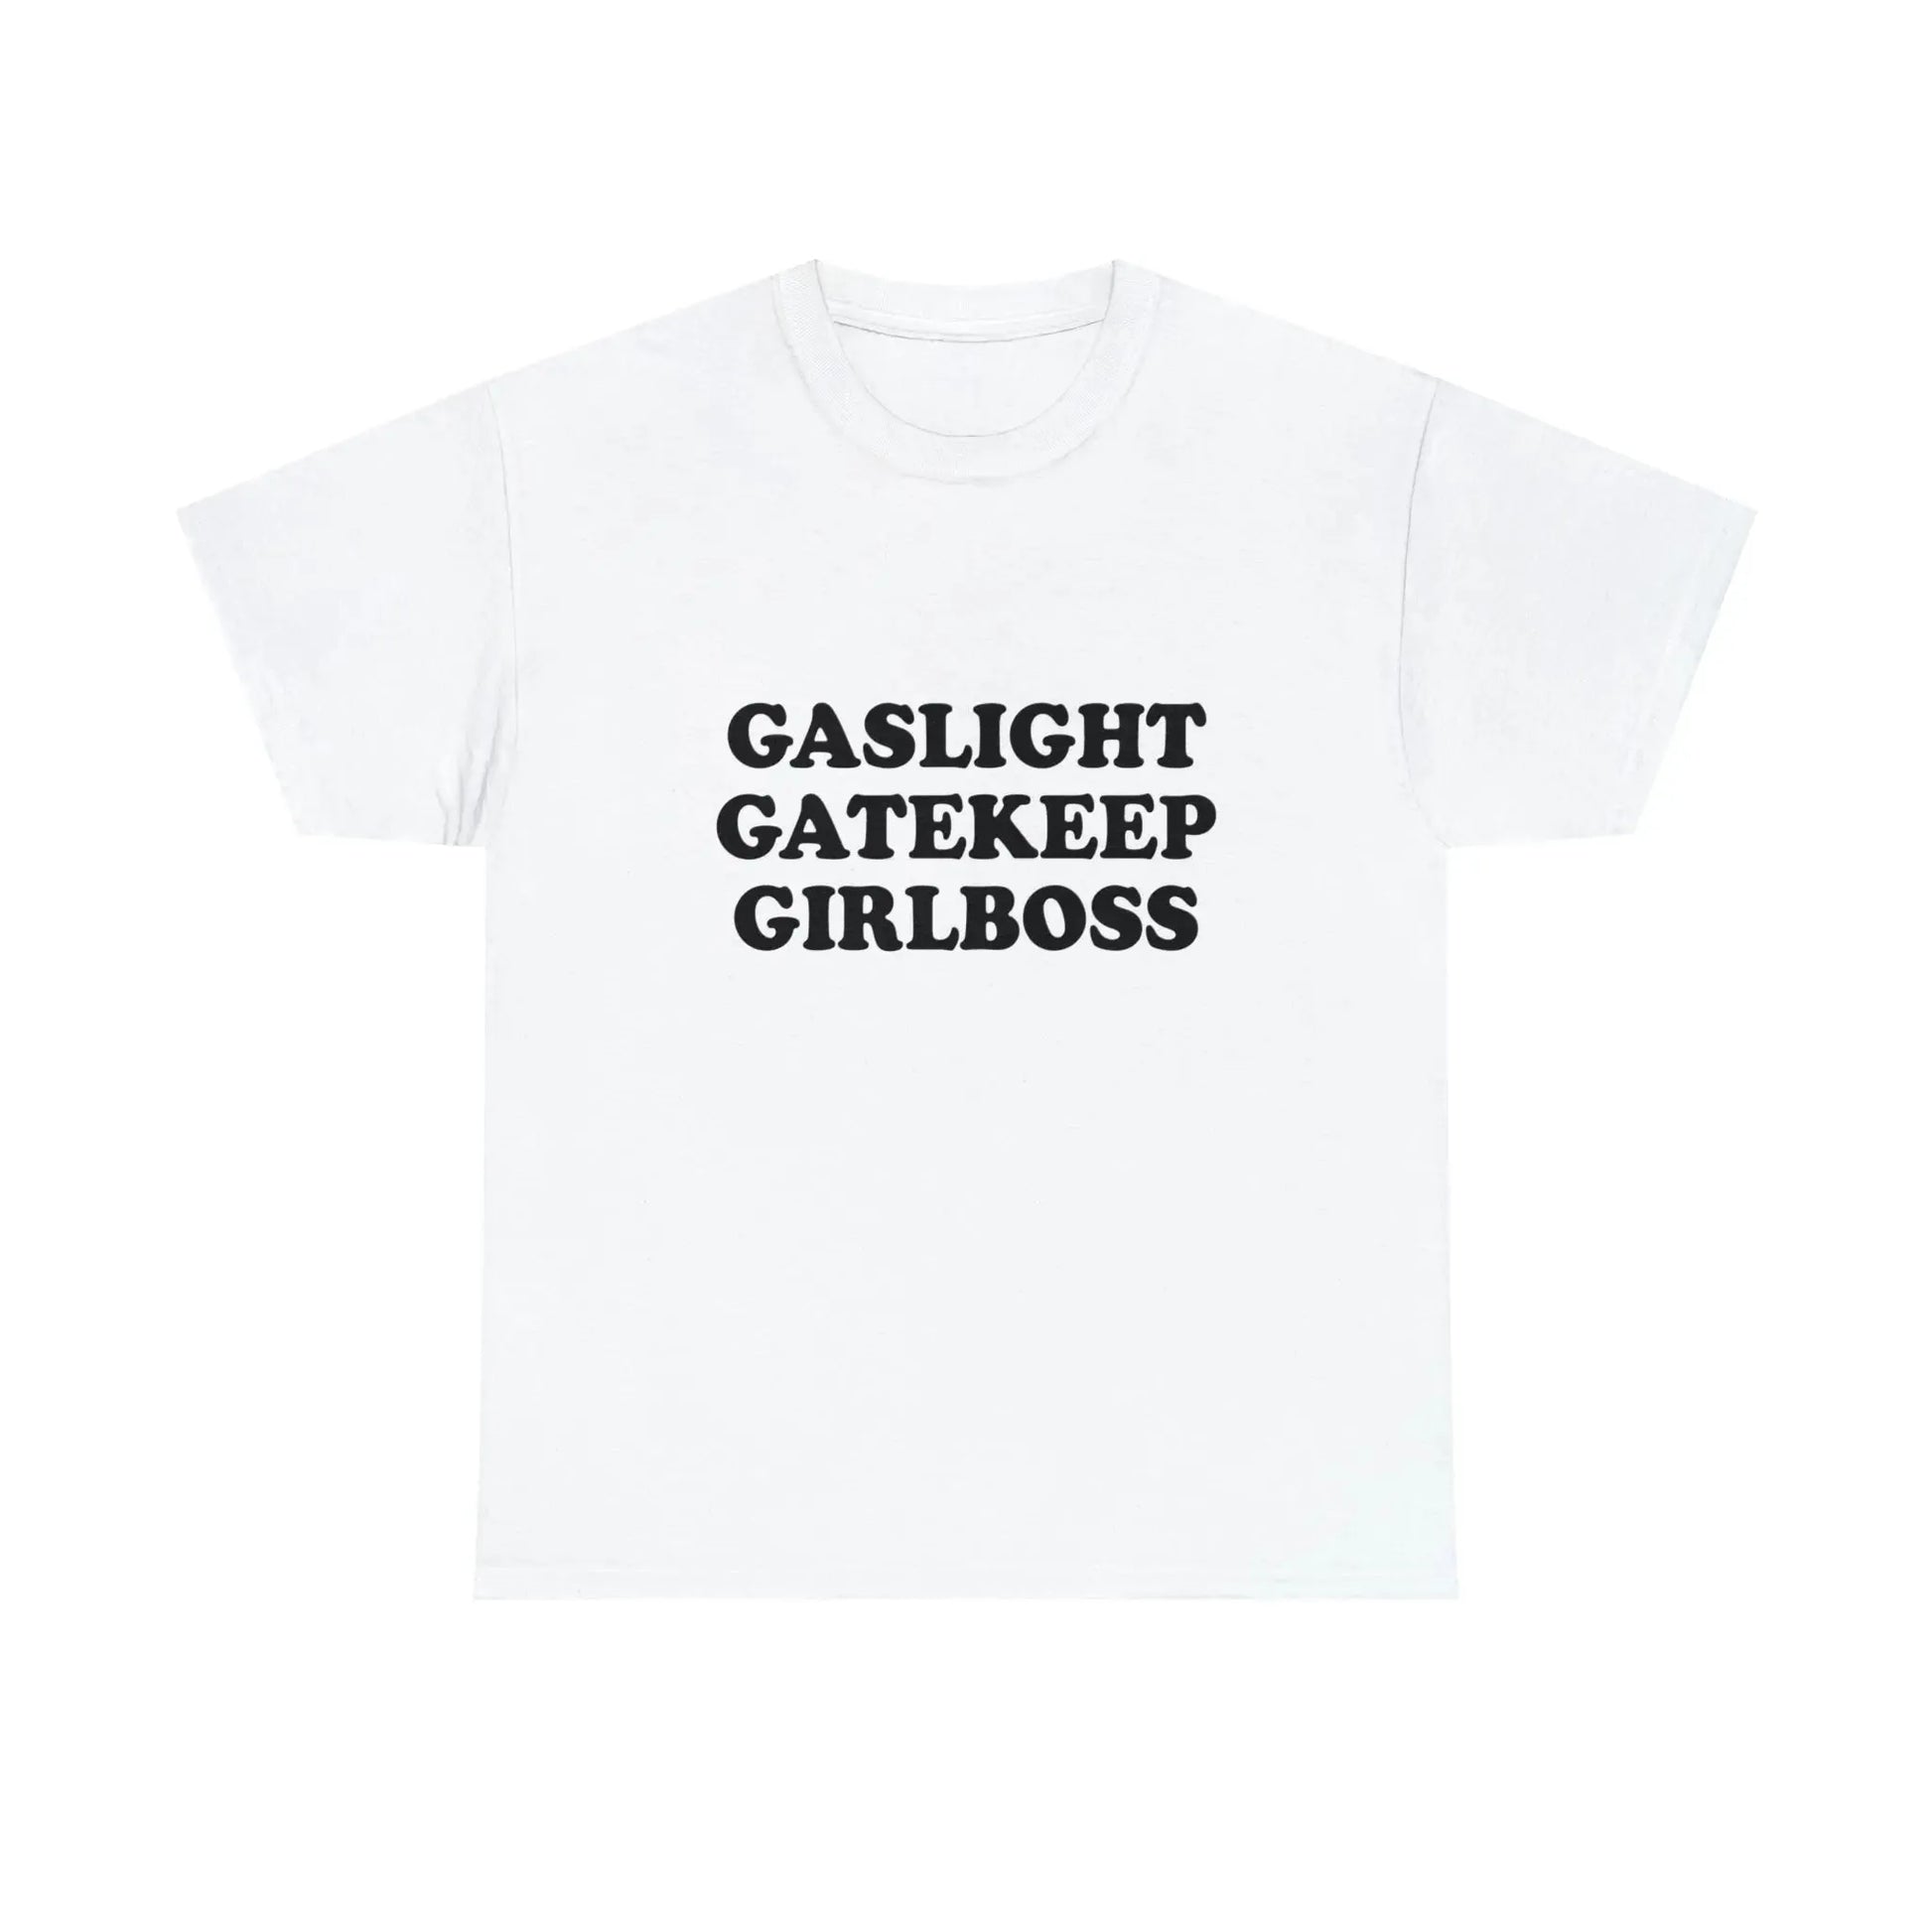 Gaslight Gatekeep Girlboss T-Shirt - Failure International failureinternational.com store brand tiktok instagram